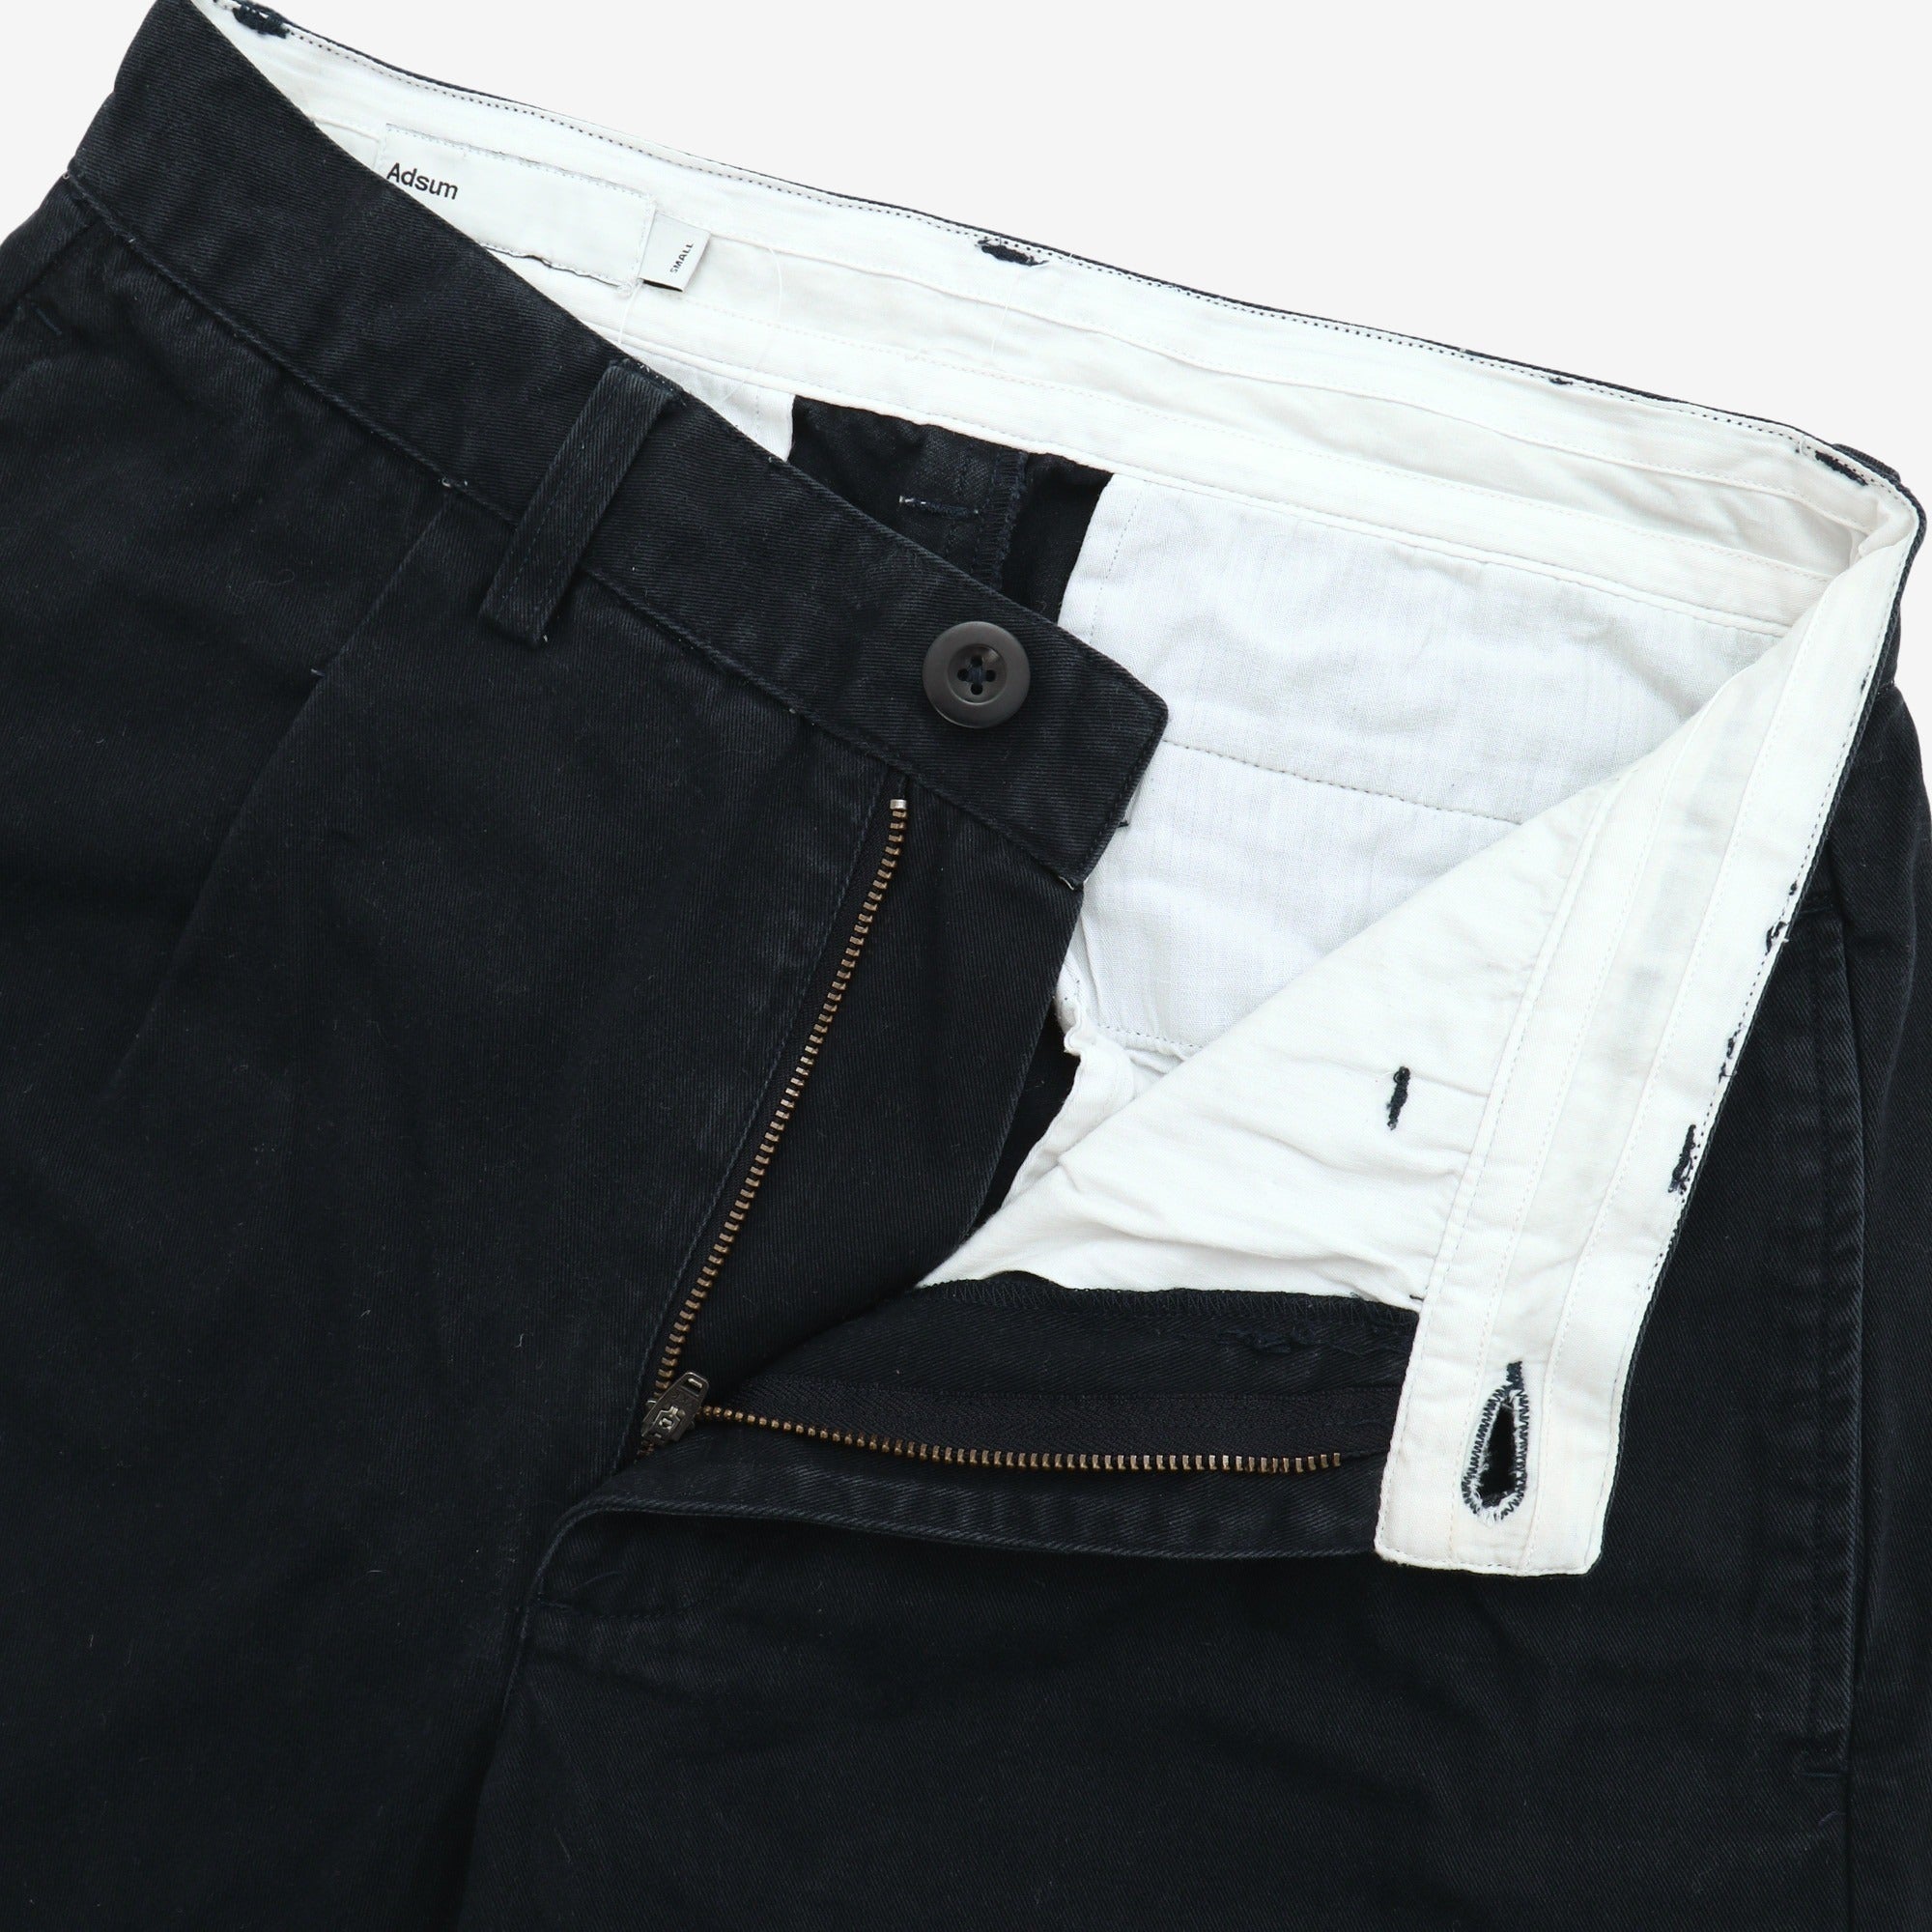 Cotton Chino Pants (29W x 27L)